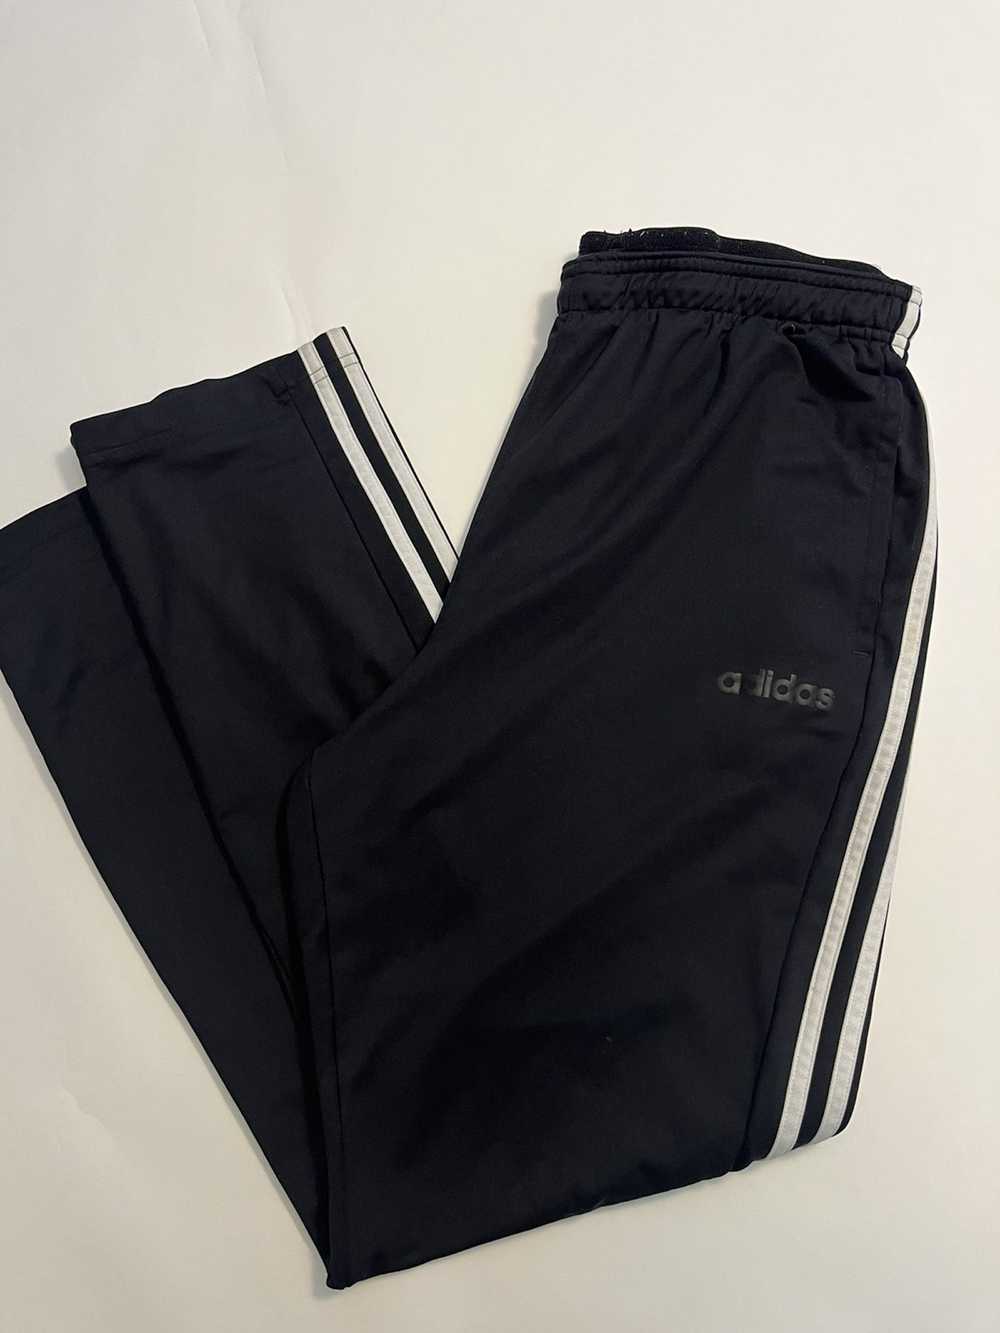 Adidas Adidas Track Sweatpants Large Black Three … - image 1